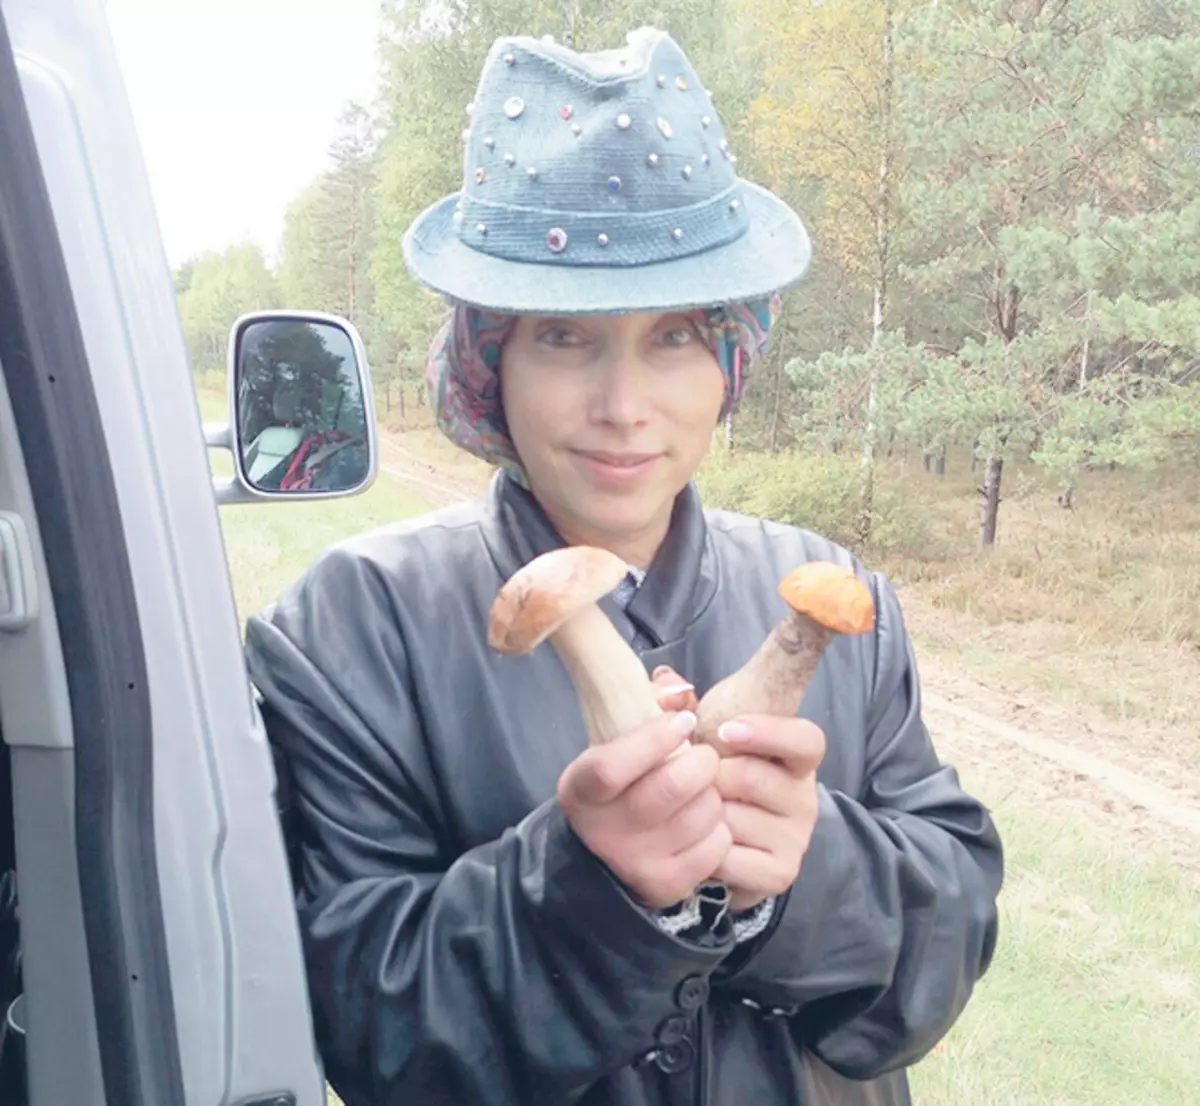 Čak iu planinarskim uvjetima, Elena Sparrow se ne odbija užitak stavljanja na moderan šešir, koji jasno dodjeljuje domaćicu među ostalima gljiva